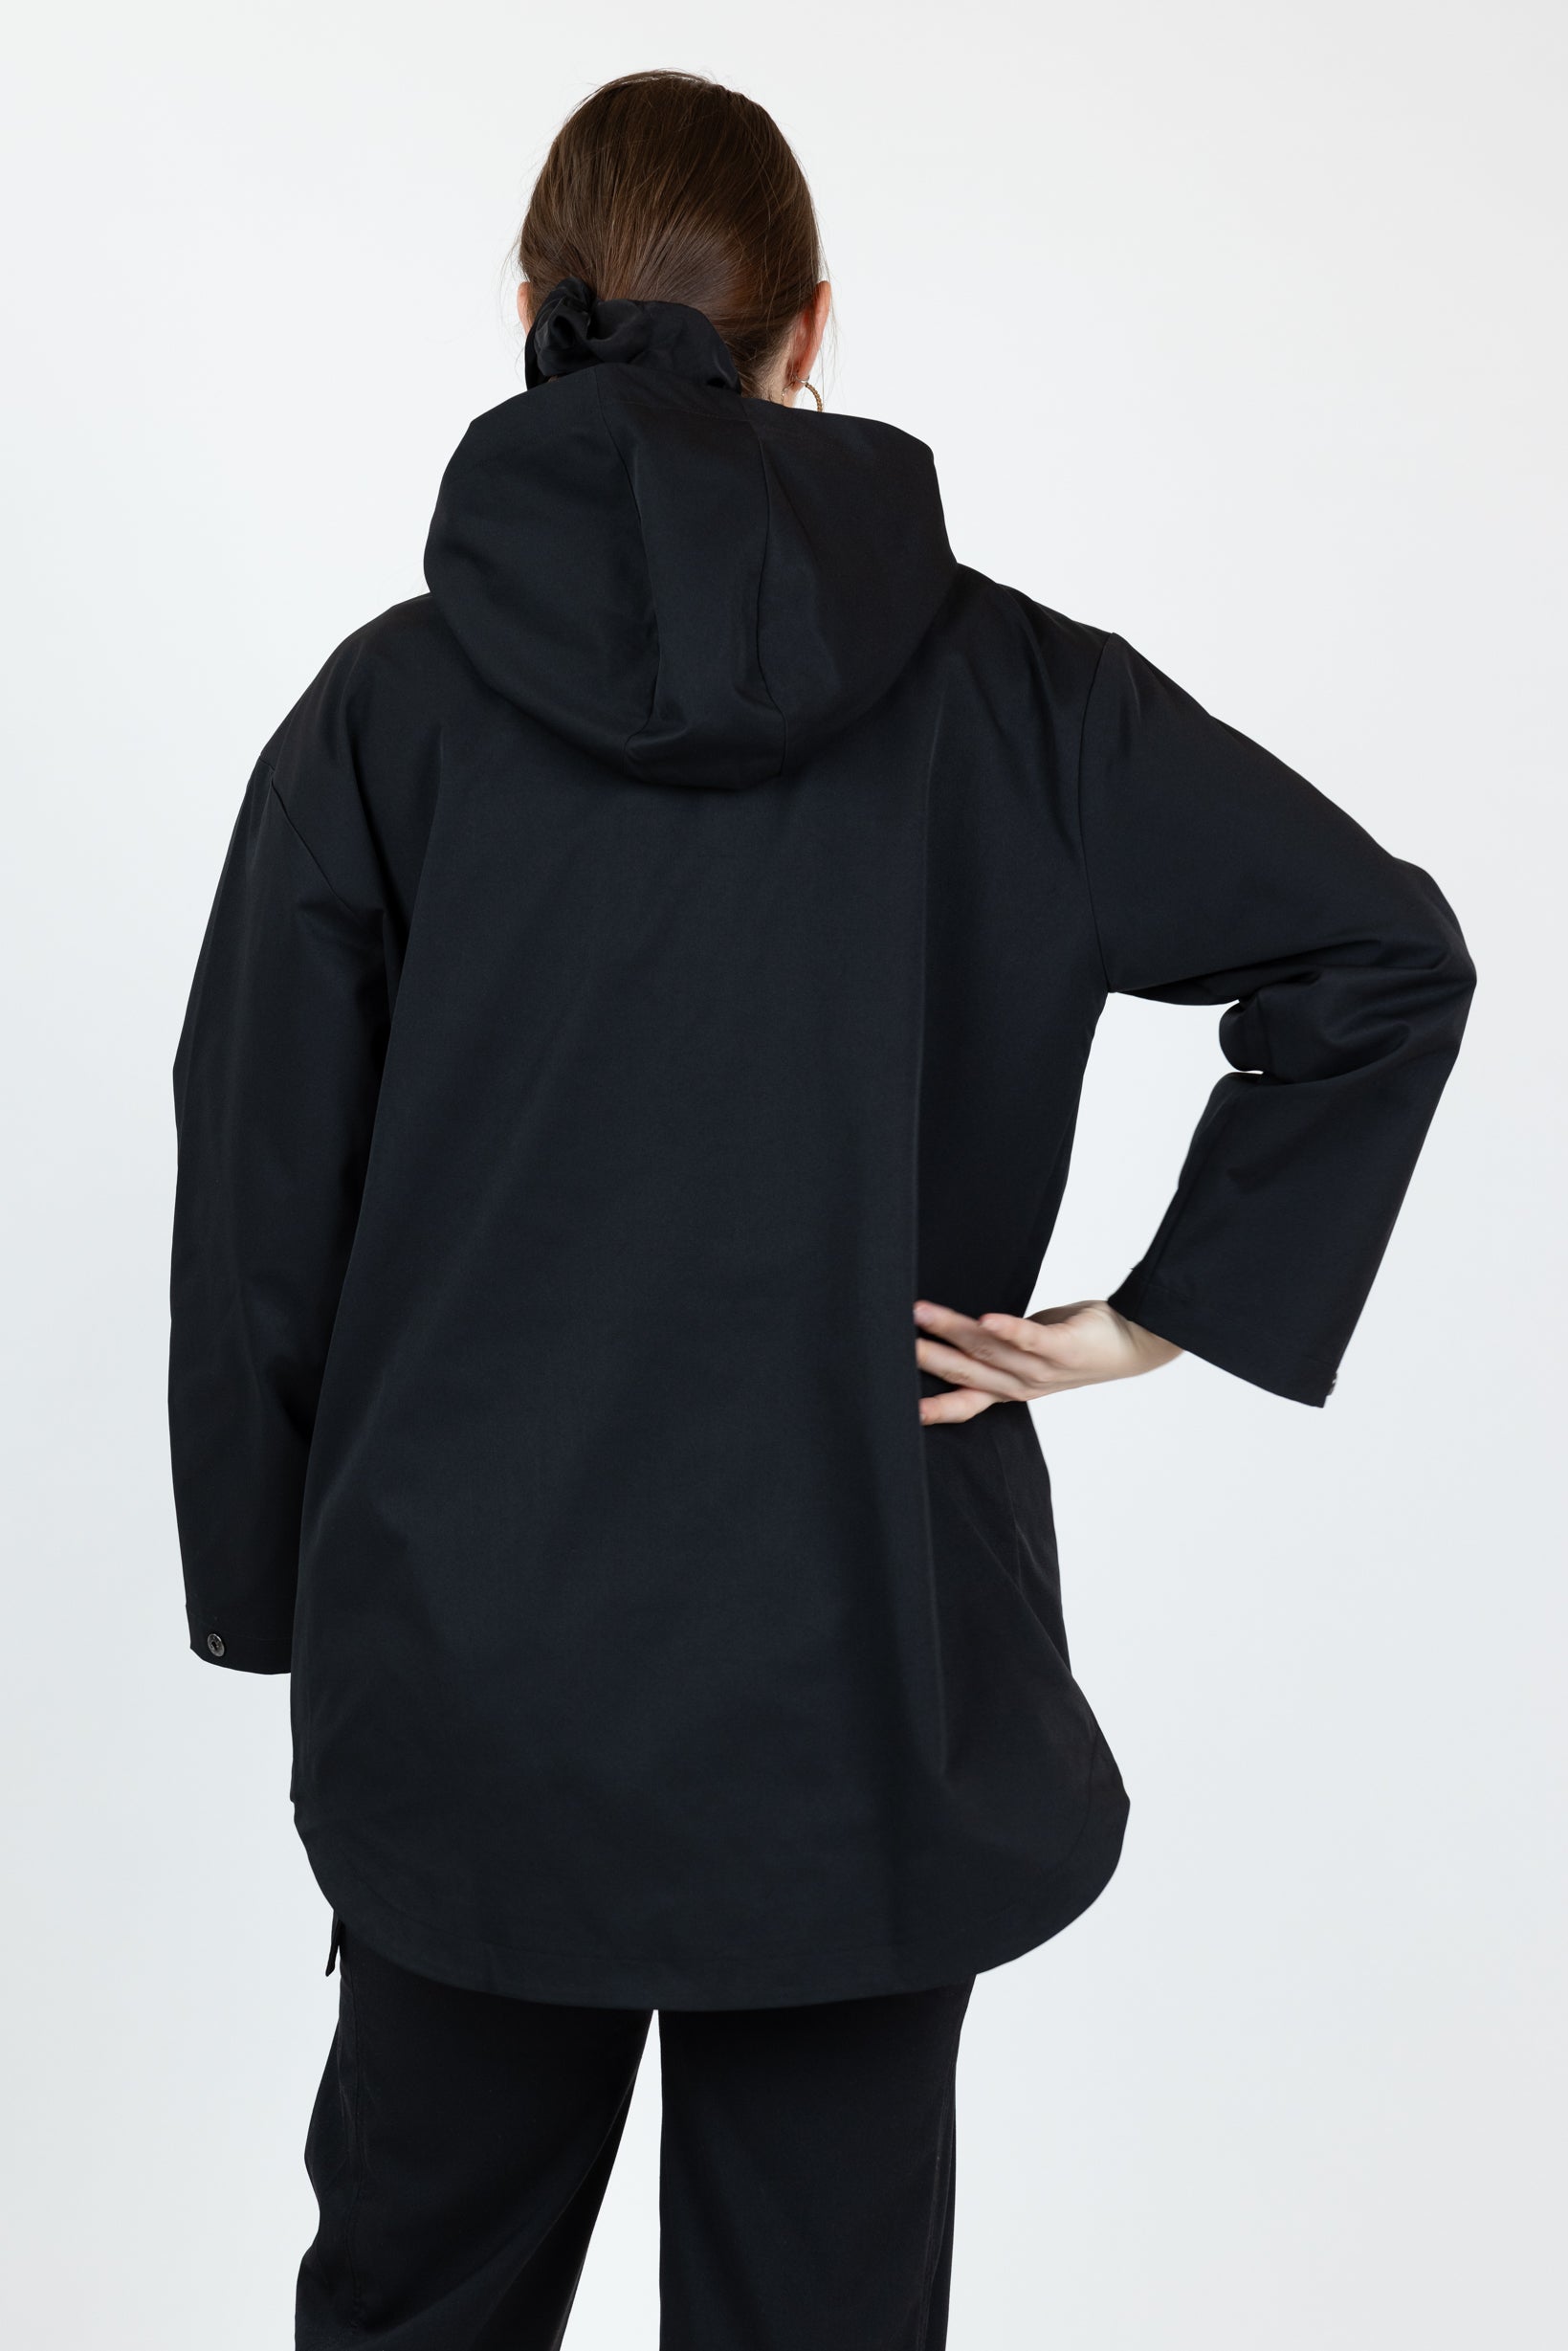 M8310Black-top-hoody-pullover